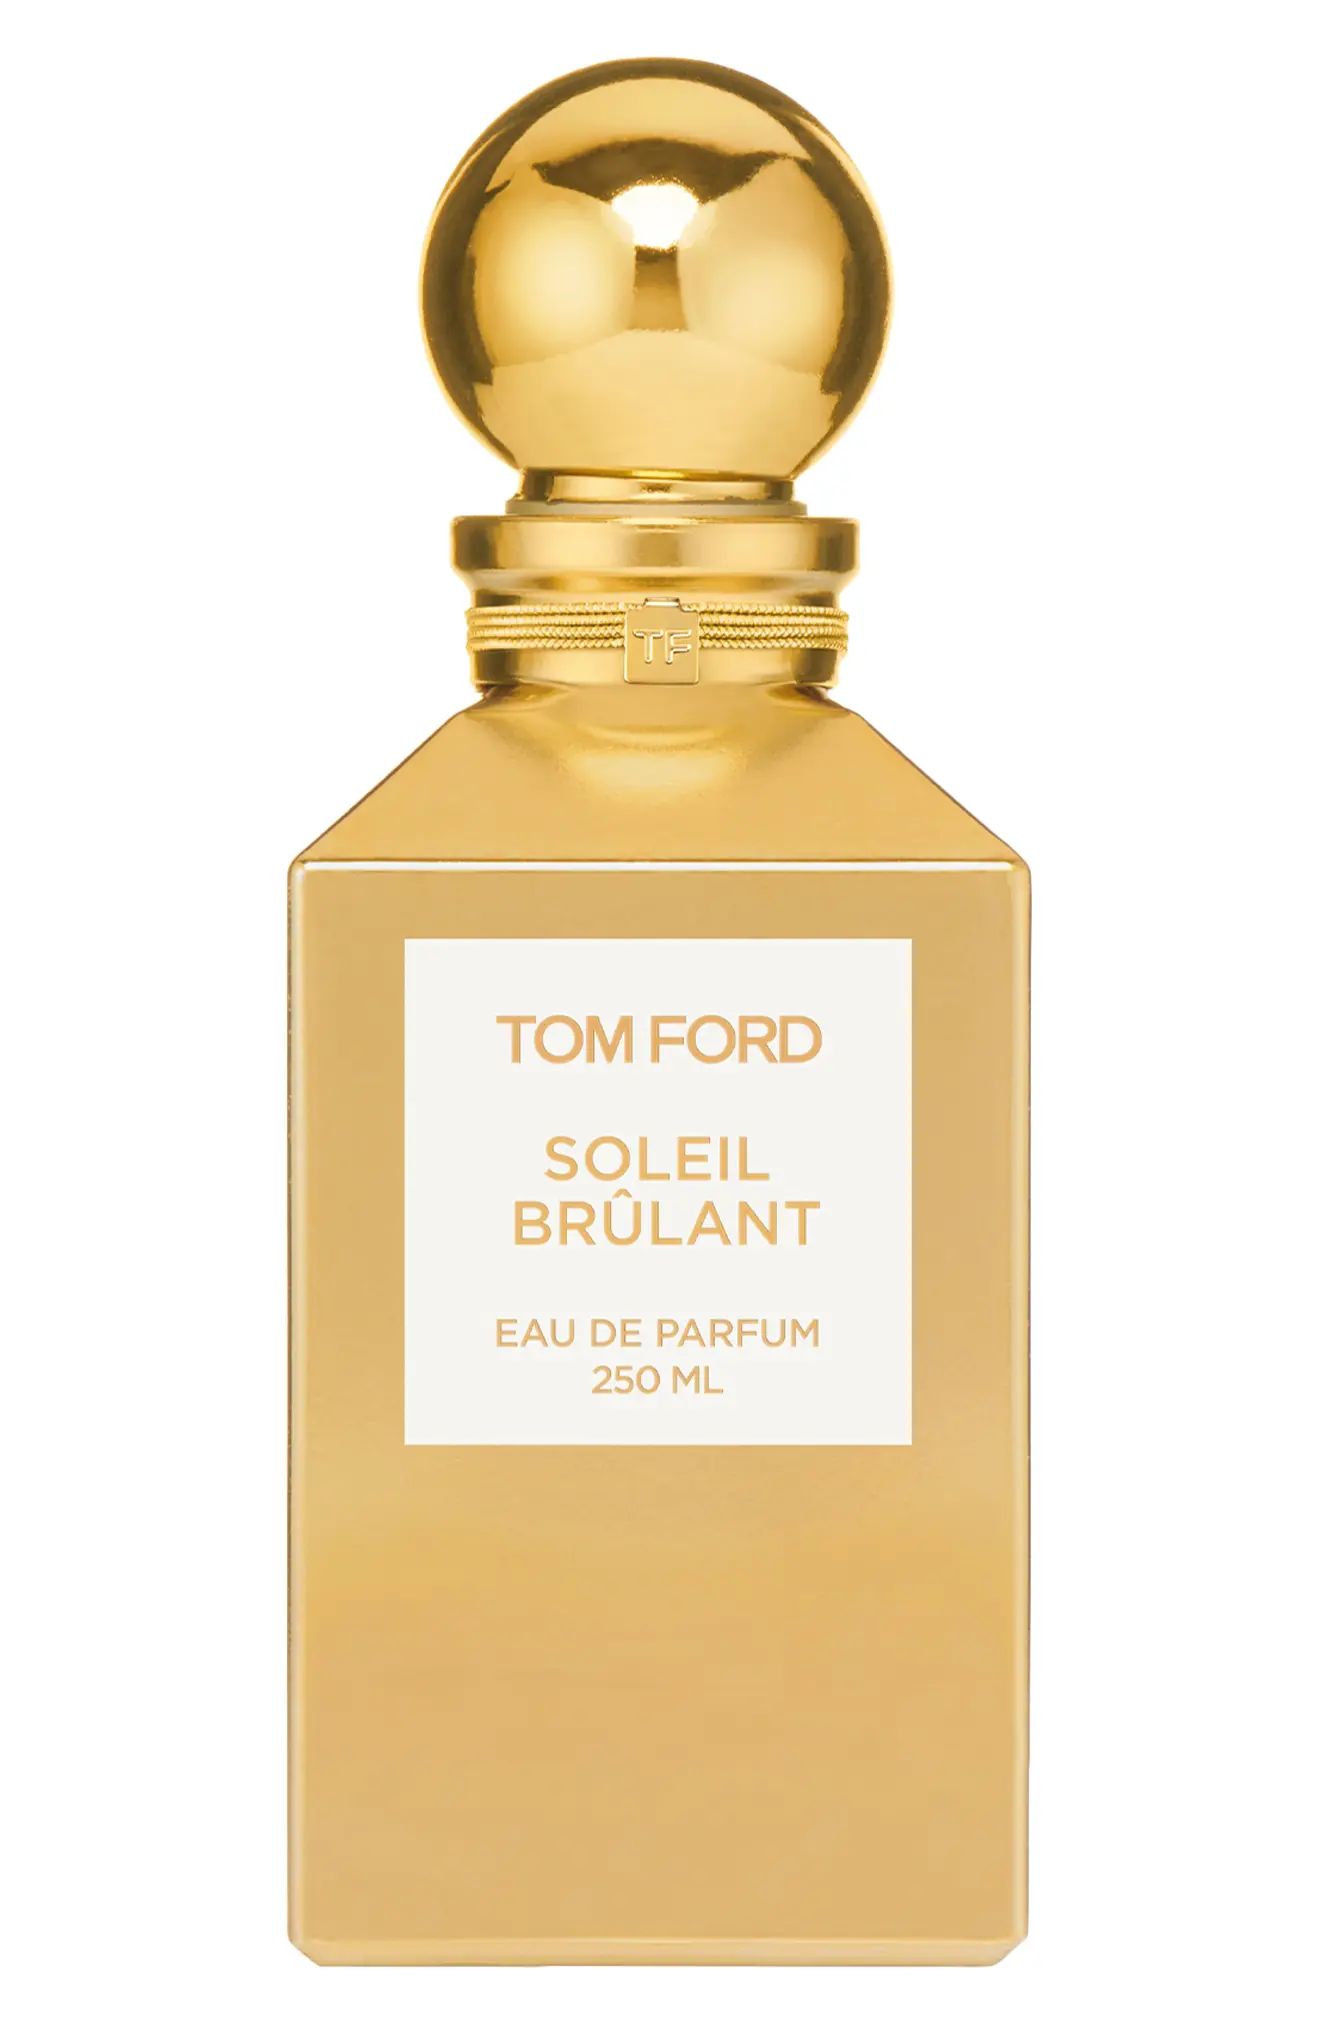 Tom Ford Soleil Brulant Eau de Parfum Decanter at Nordstrom, Size 8.5 Oz | Nordstrom